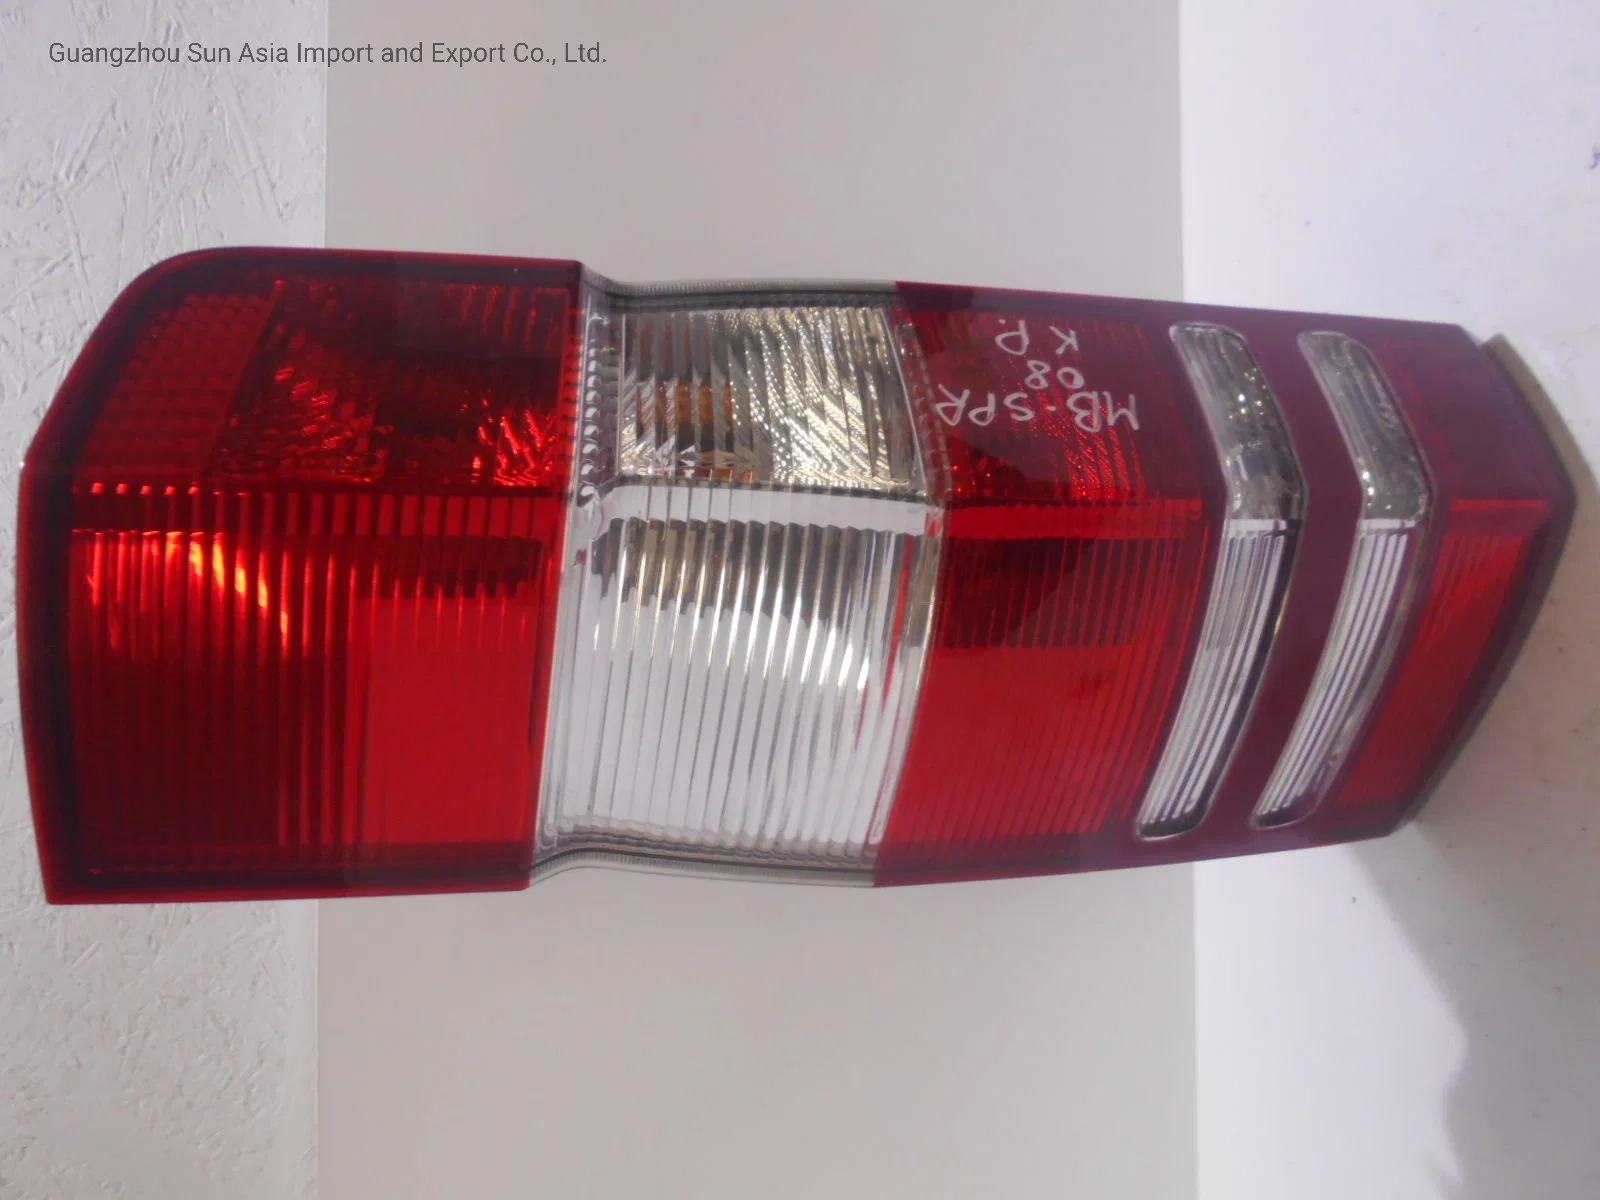 مصباح المؤخرة مناسب لقطع غيار سيارات مرسيدس 2006 9068200264 RH 9068200164 LH